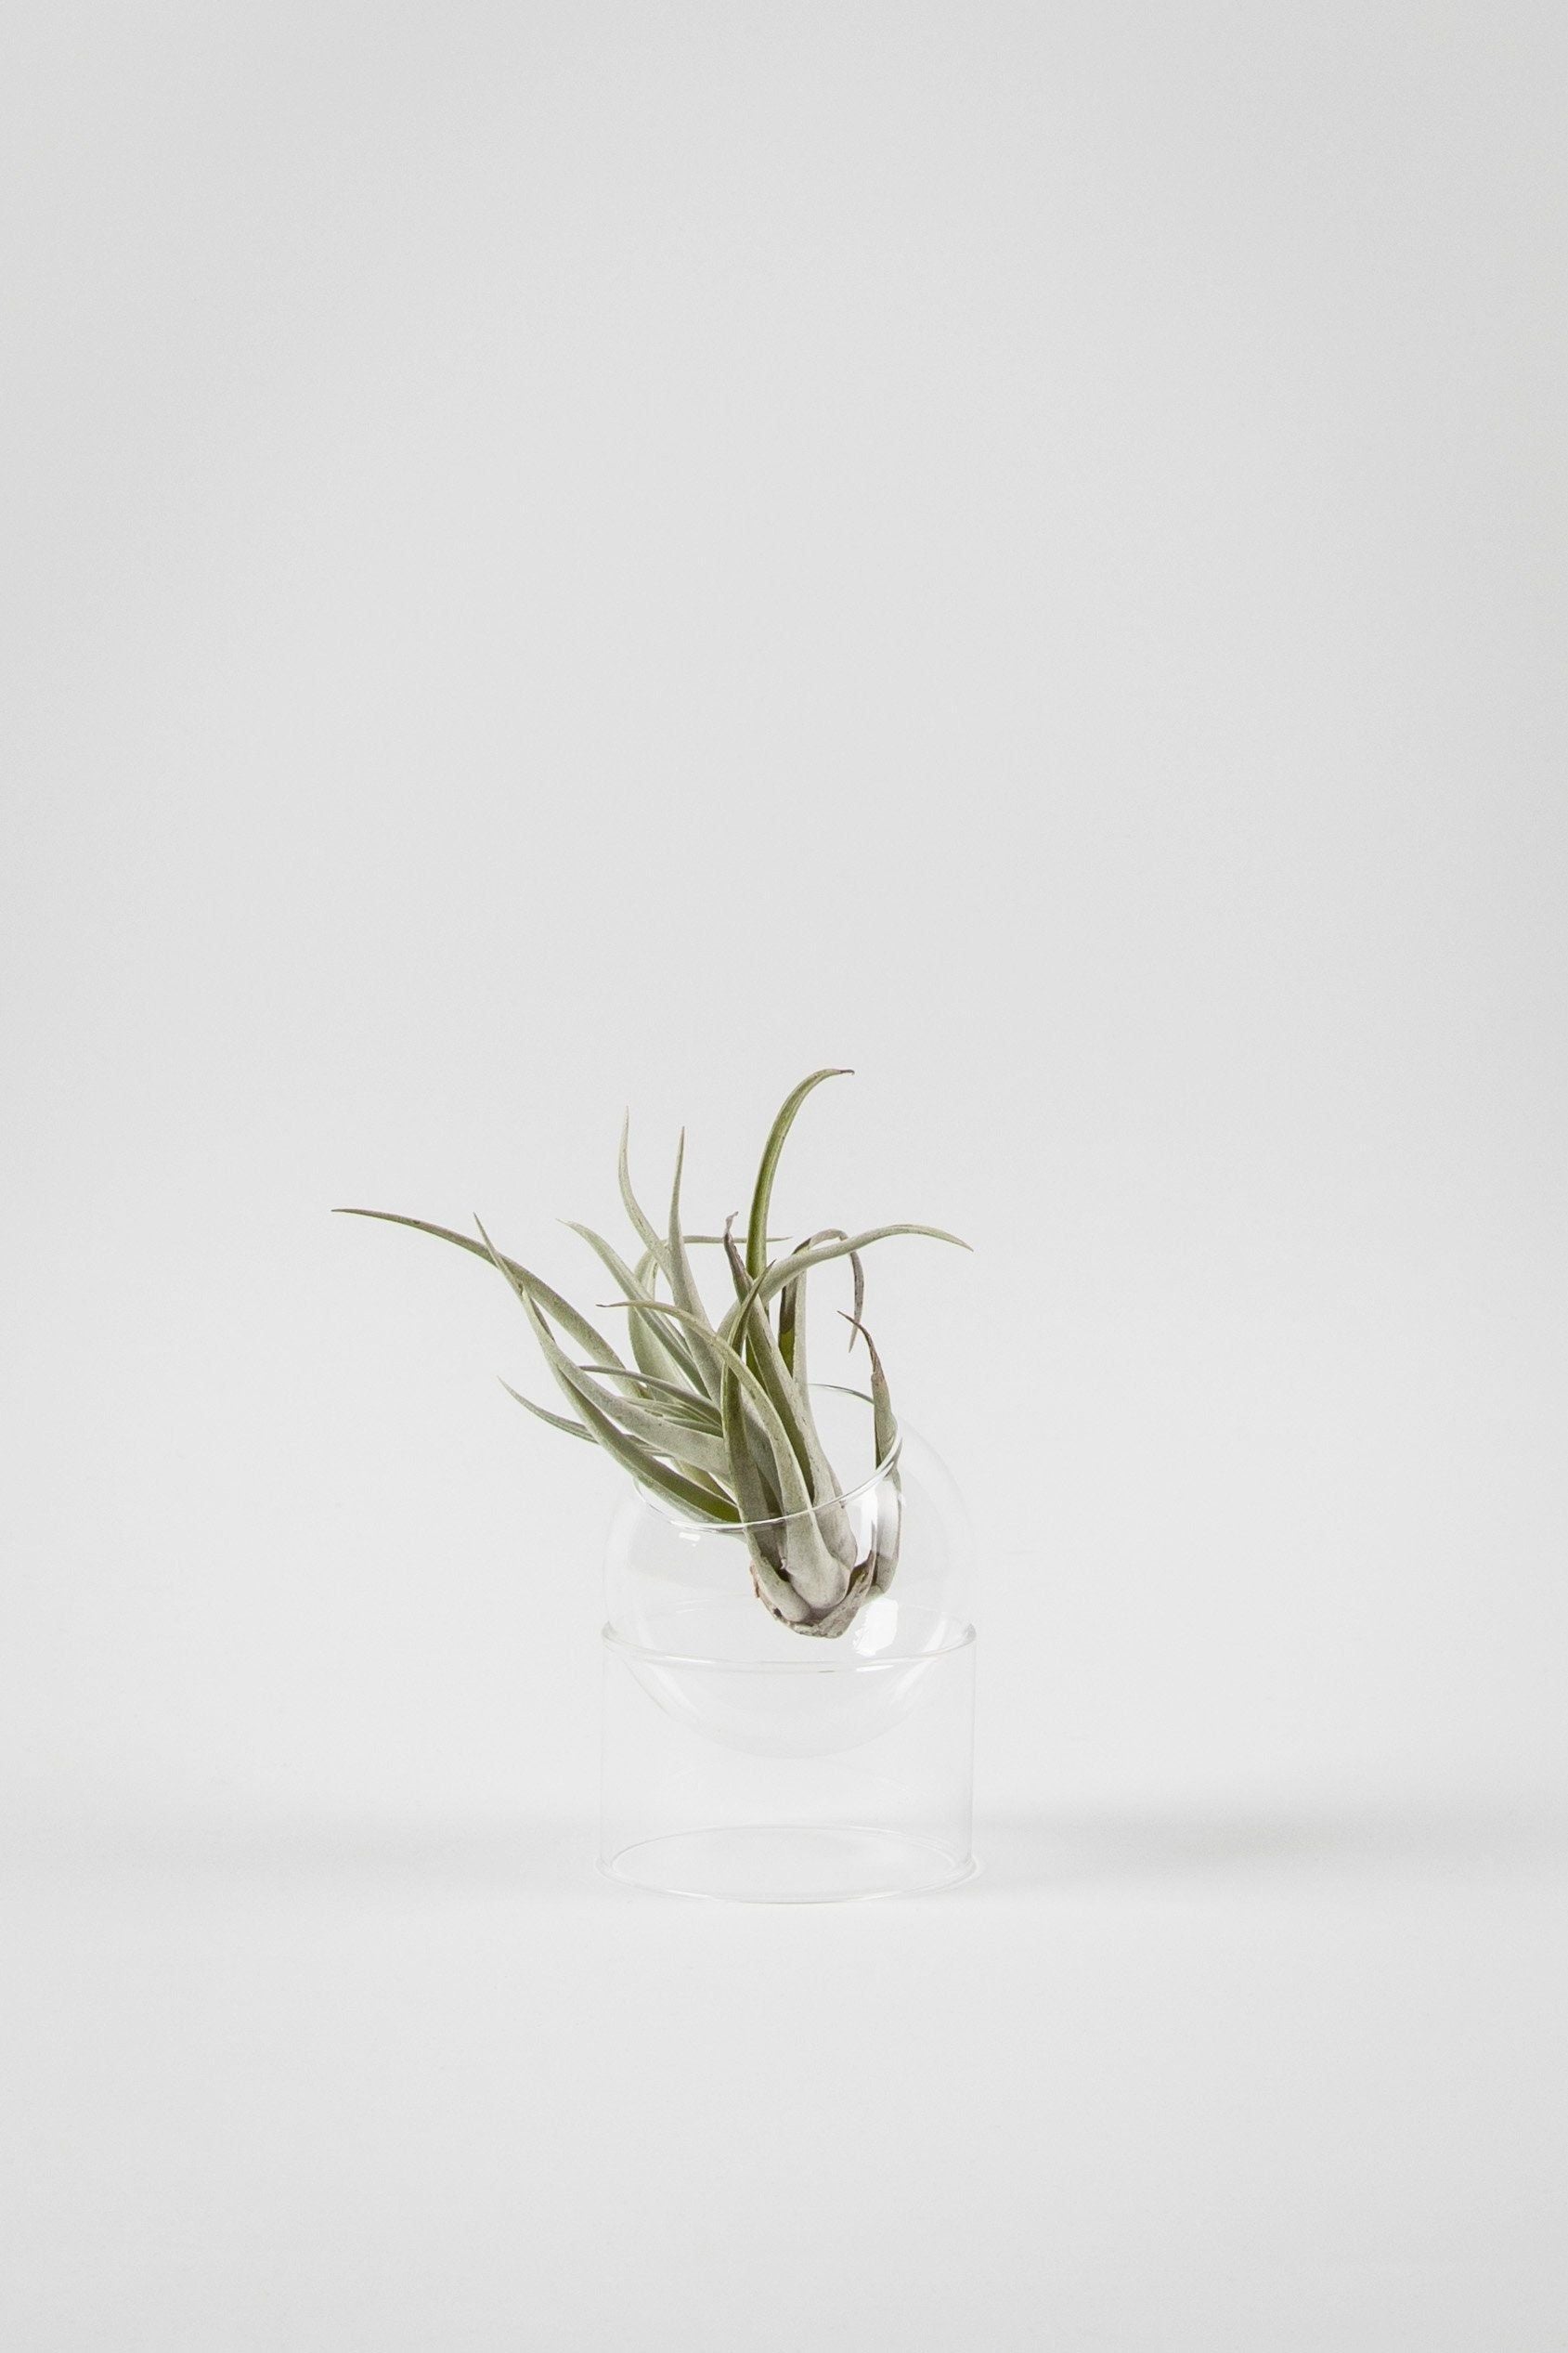 Studiosta seisovista kasvien kuplamaljakosta, läpinäkyvä